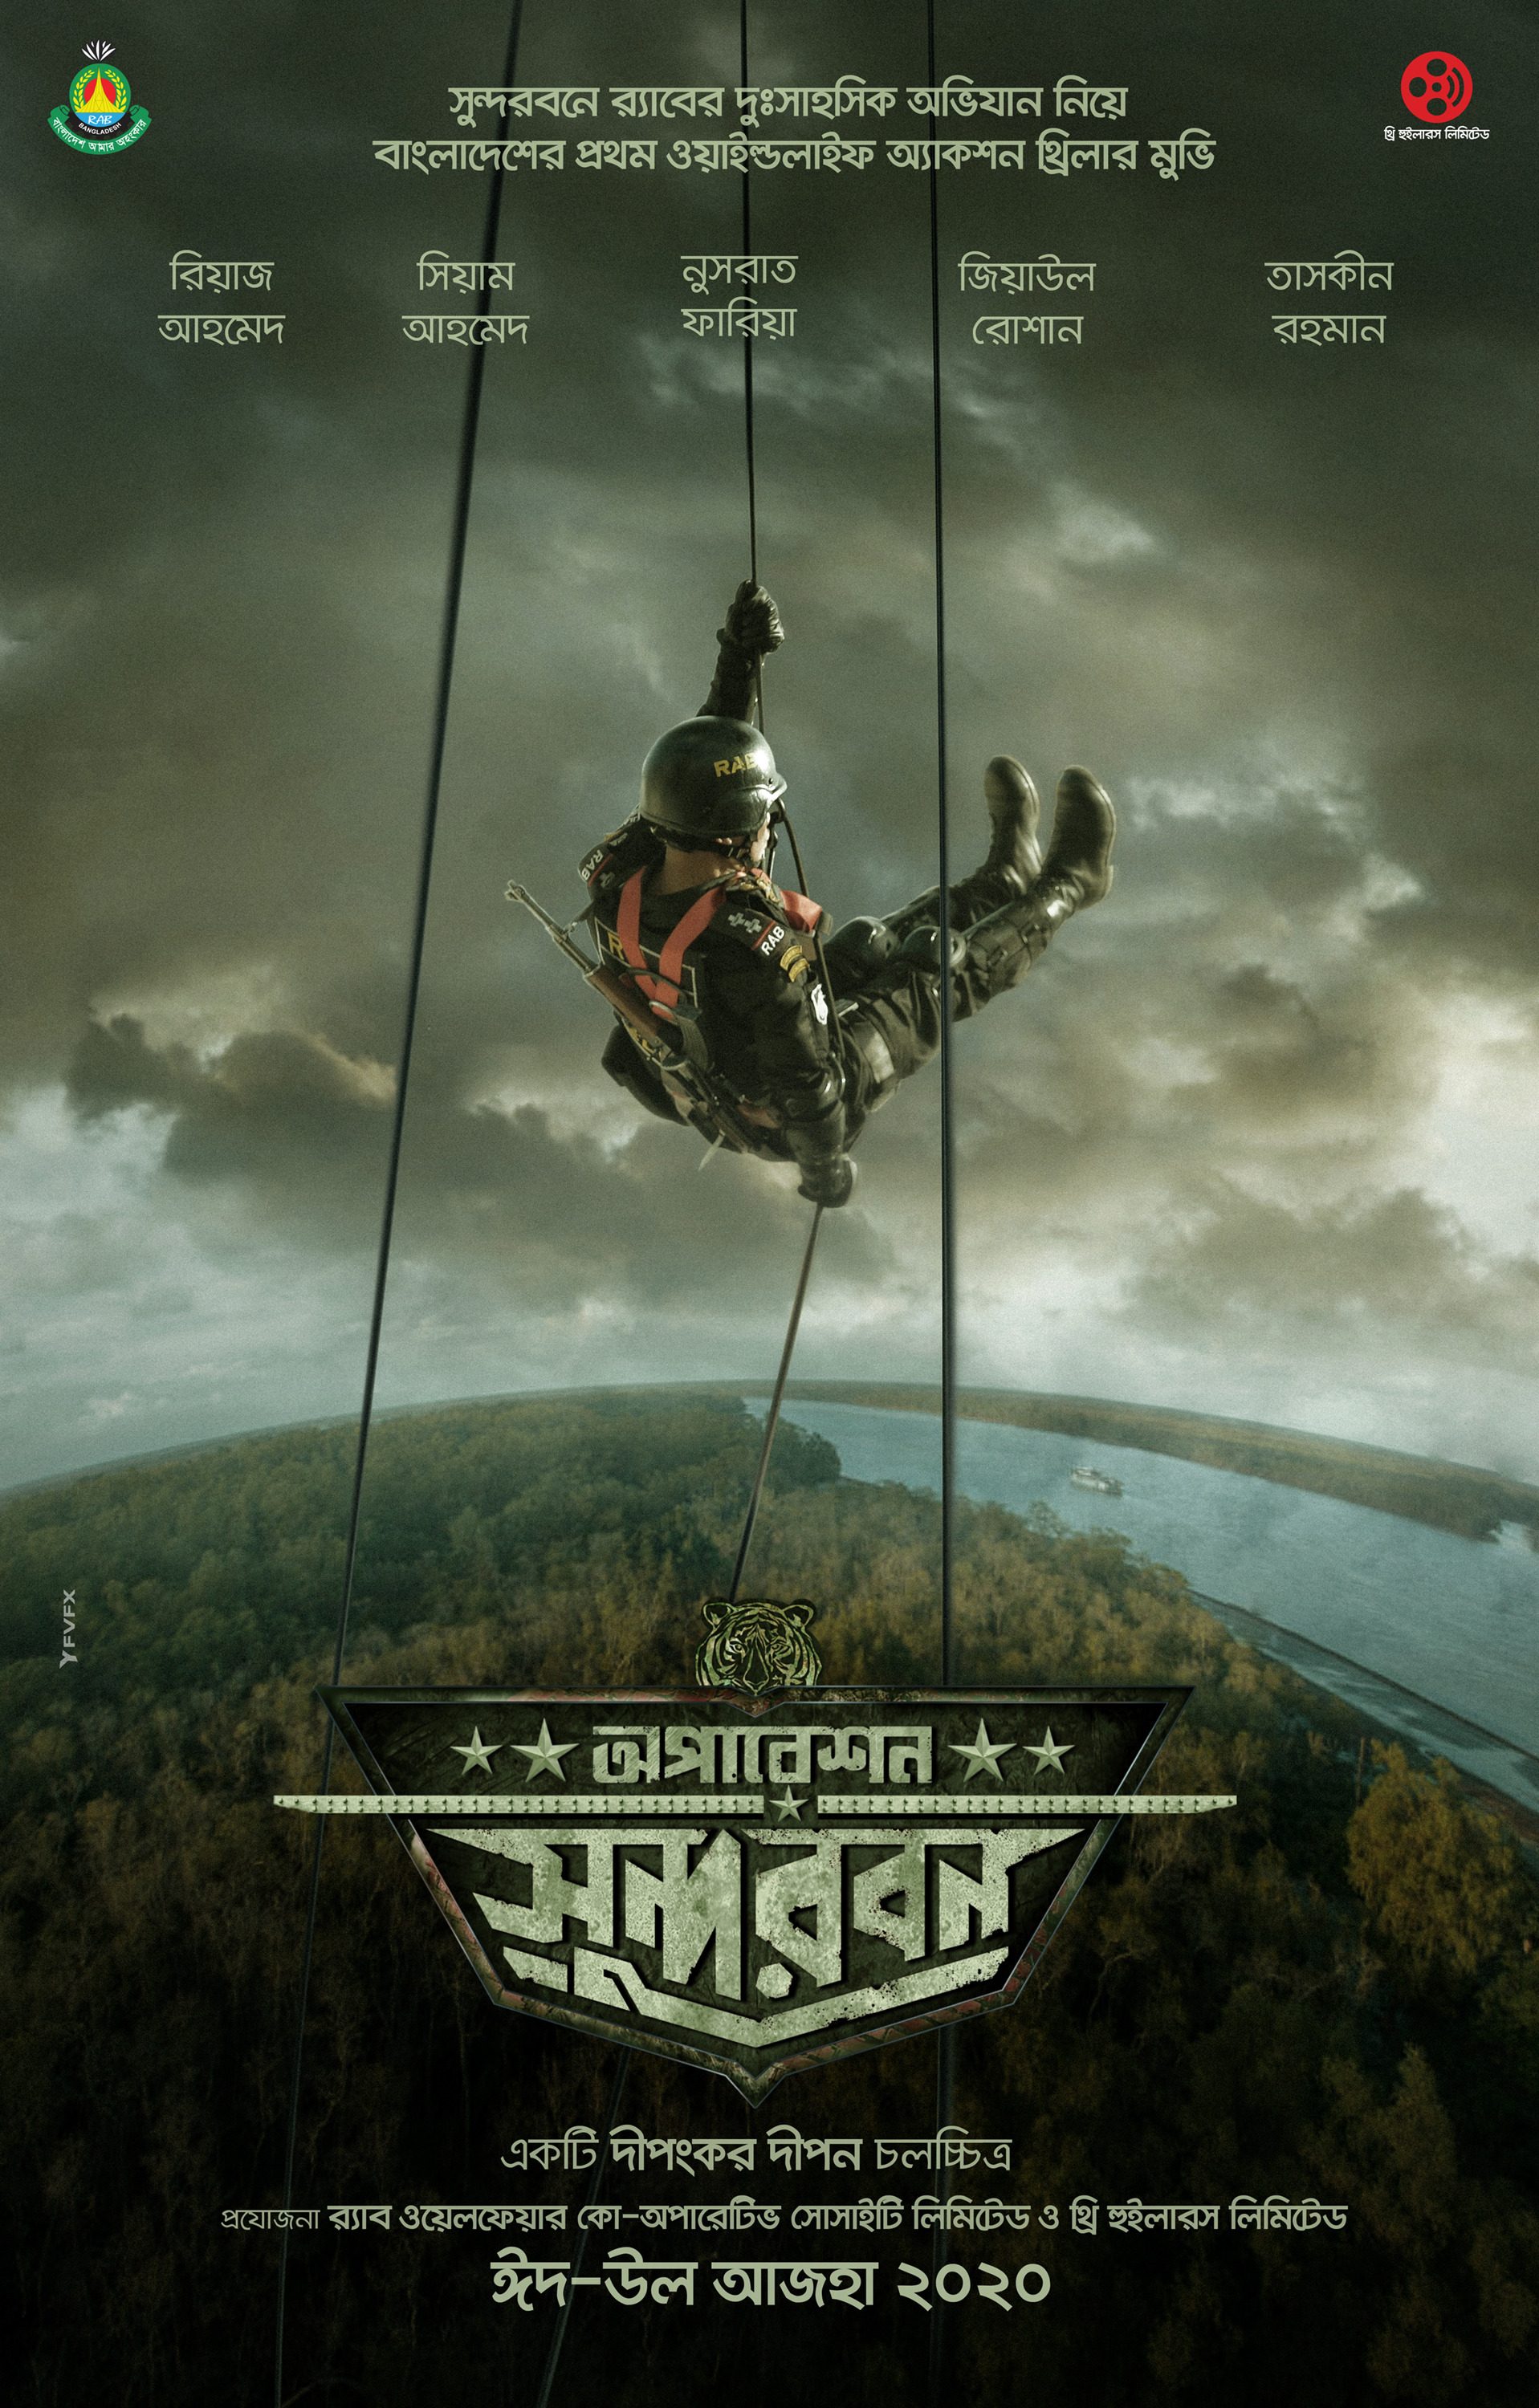 Mega Sized Movie Poster Image for Operation Sundarbans 